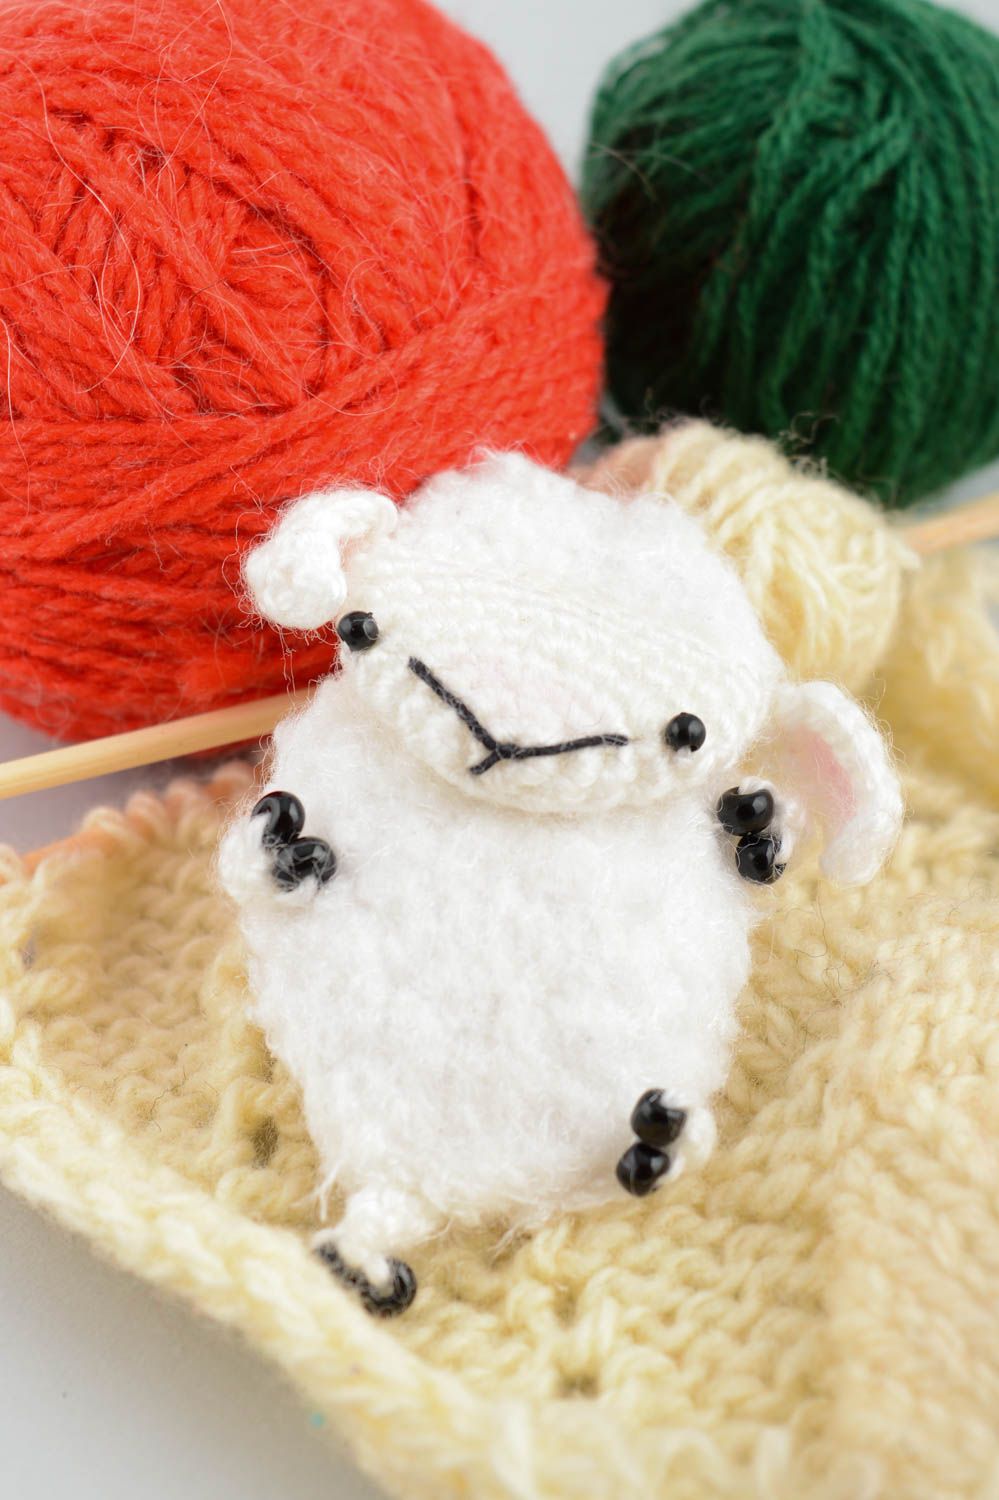 Мягкая вязаная игрушка магнит в виде овечки белая амигуруми маленькая хэнд мейд фото 1